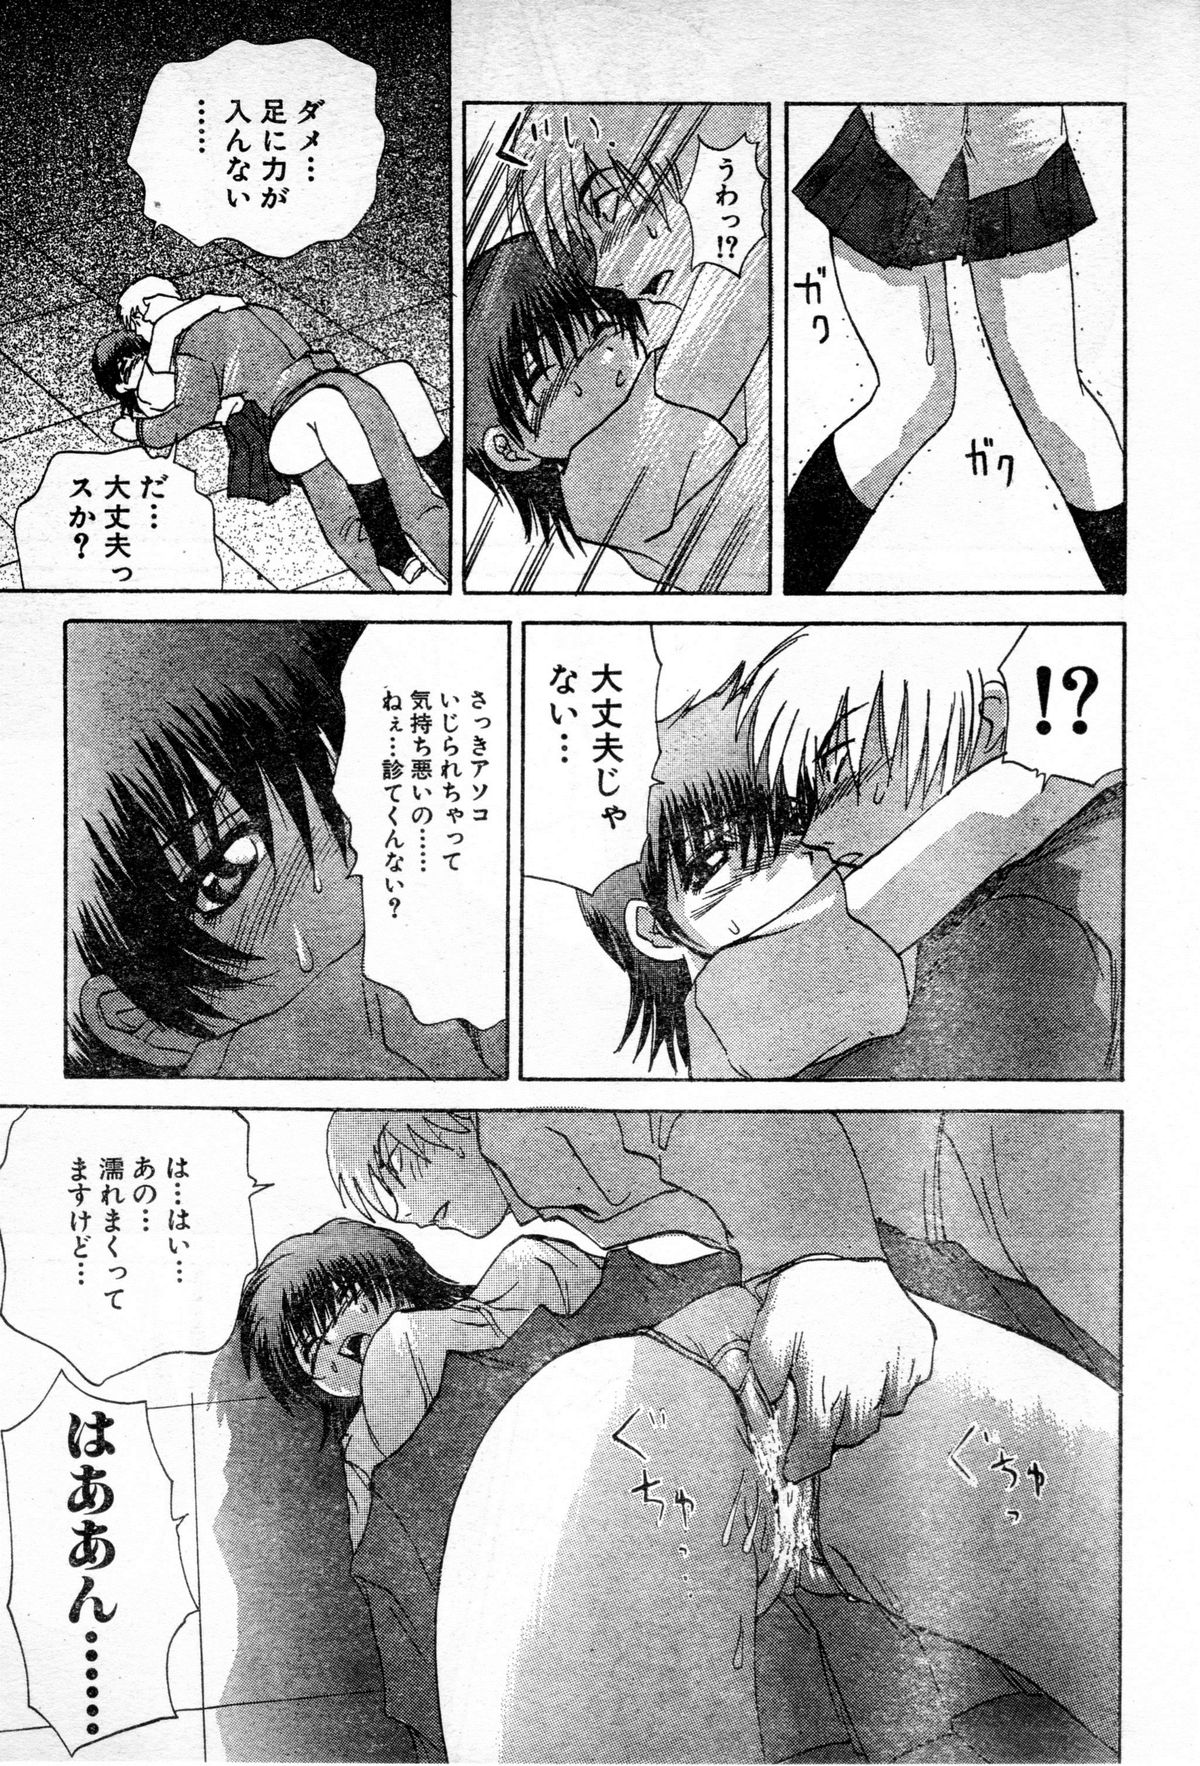 [Gekka Saeki] Gun Dancing page 19 full